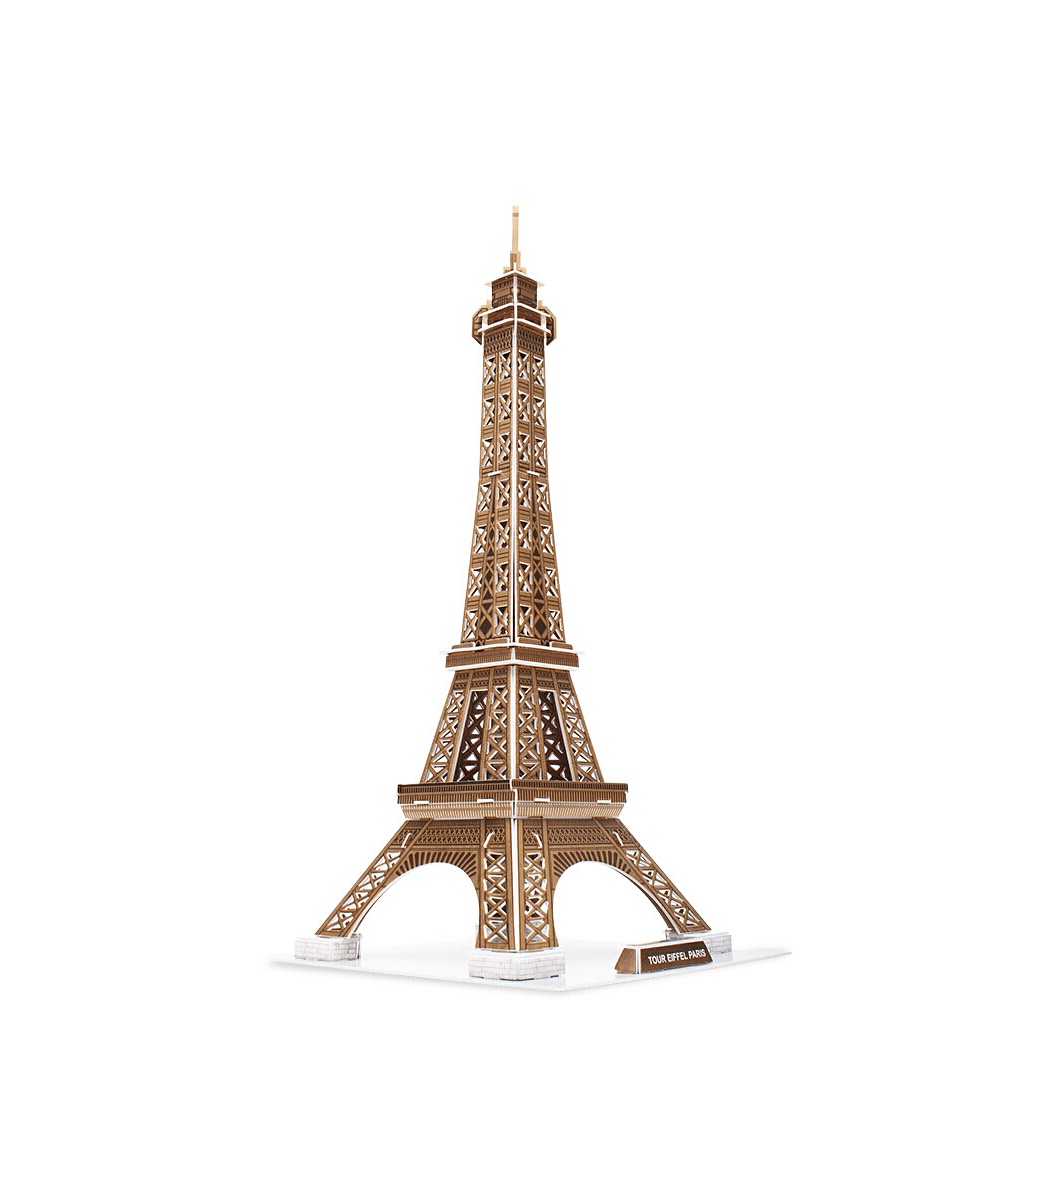 3D Puzzle Tour Eiffel, 80 pièces, Cubic Fun SOM…